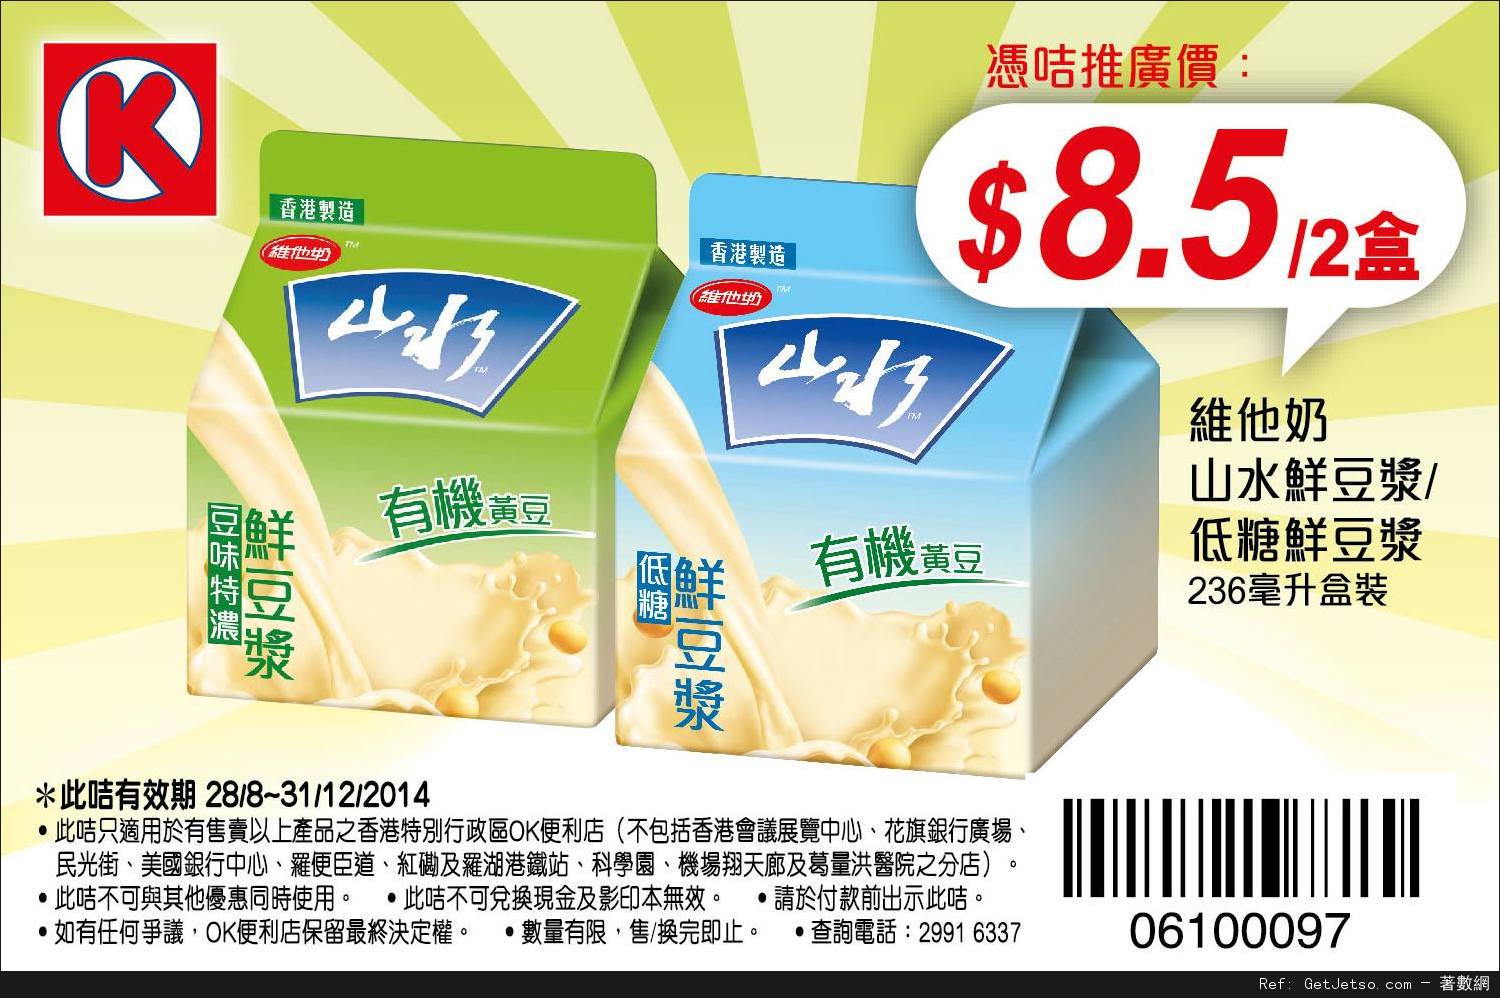 OK便利店牛奶飲品及山水豆漿電子優惠券(至14年12月31日)圖片4